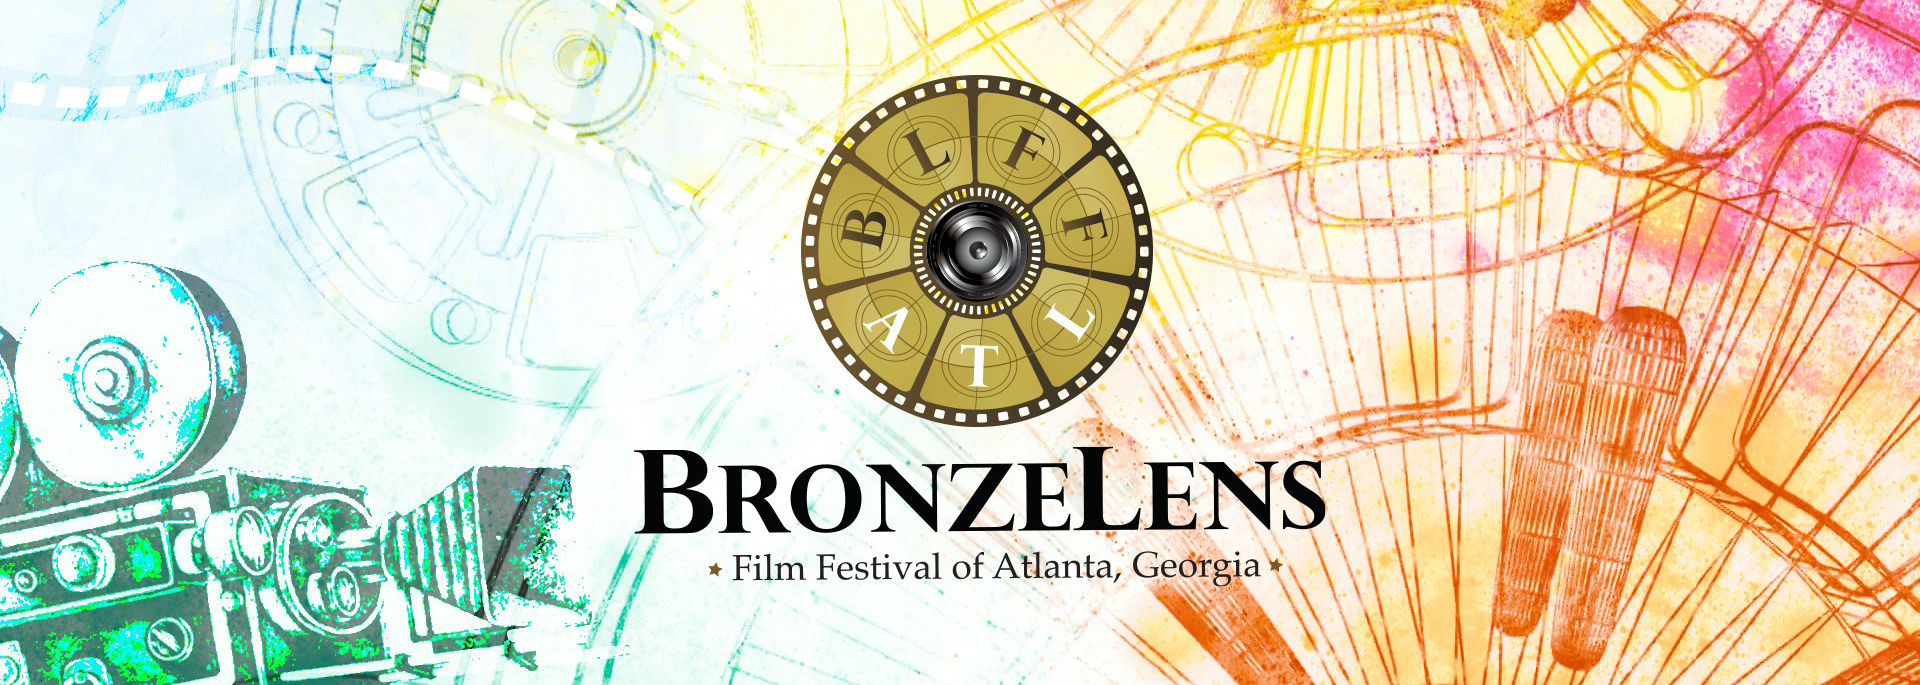 BronzeLens Film Festival channel